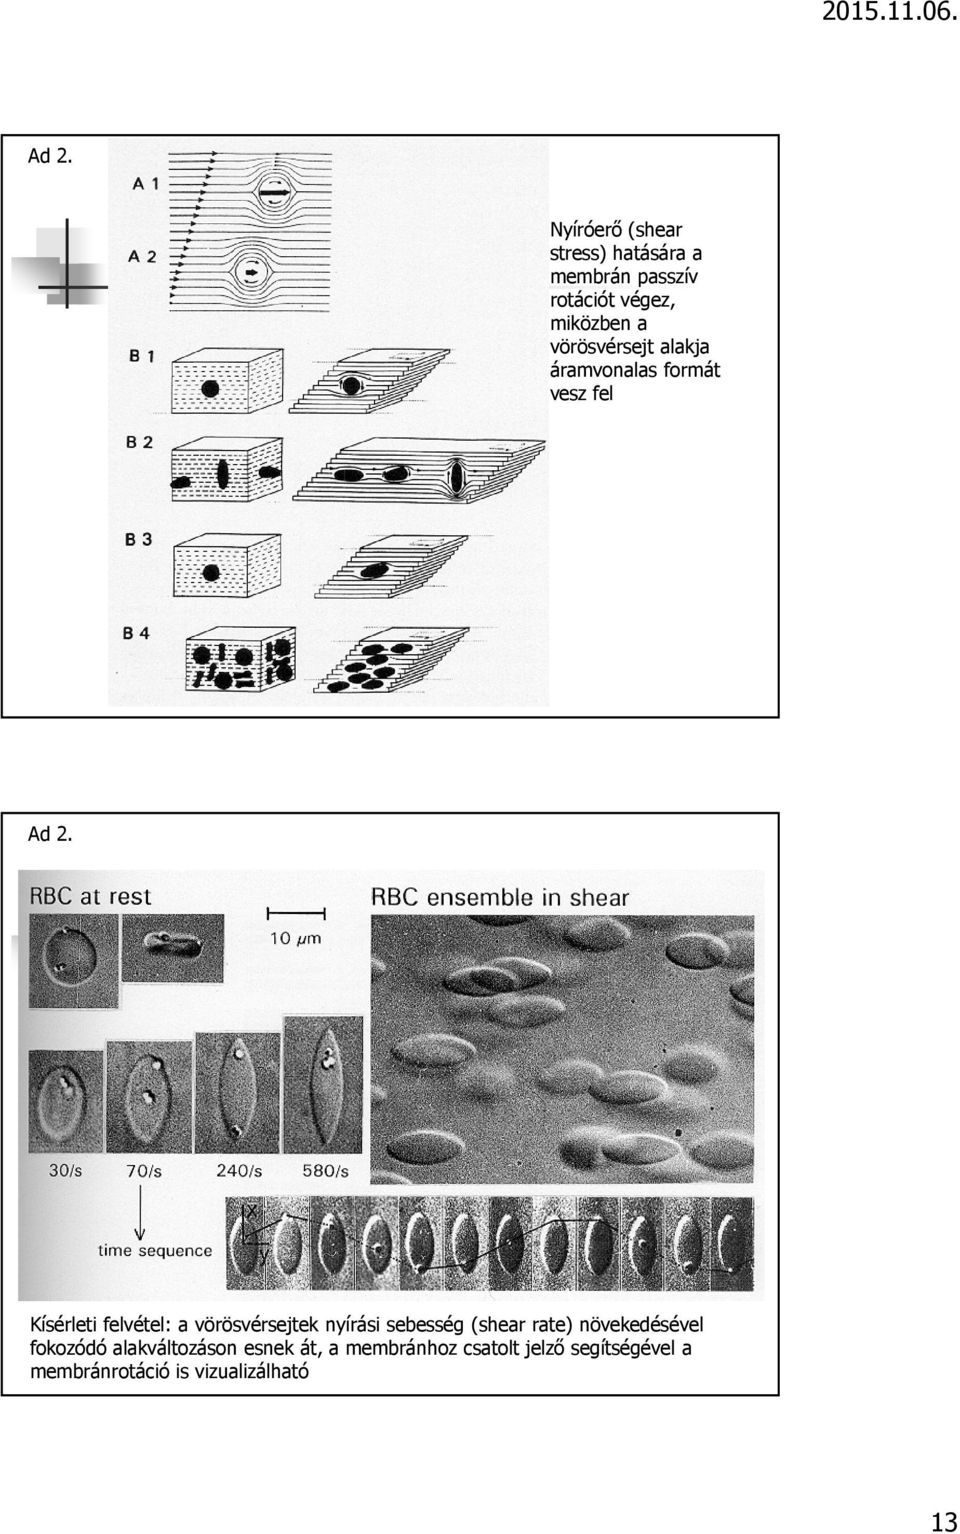 Kísérleti felvétel: a vörösvérsejtek nyírási sebesség (shear rate) növekedésével